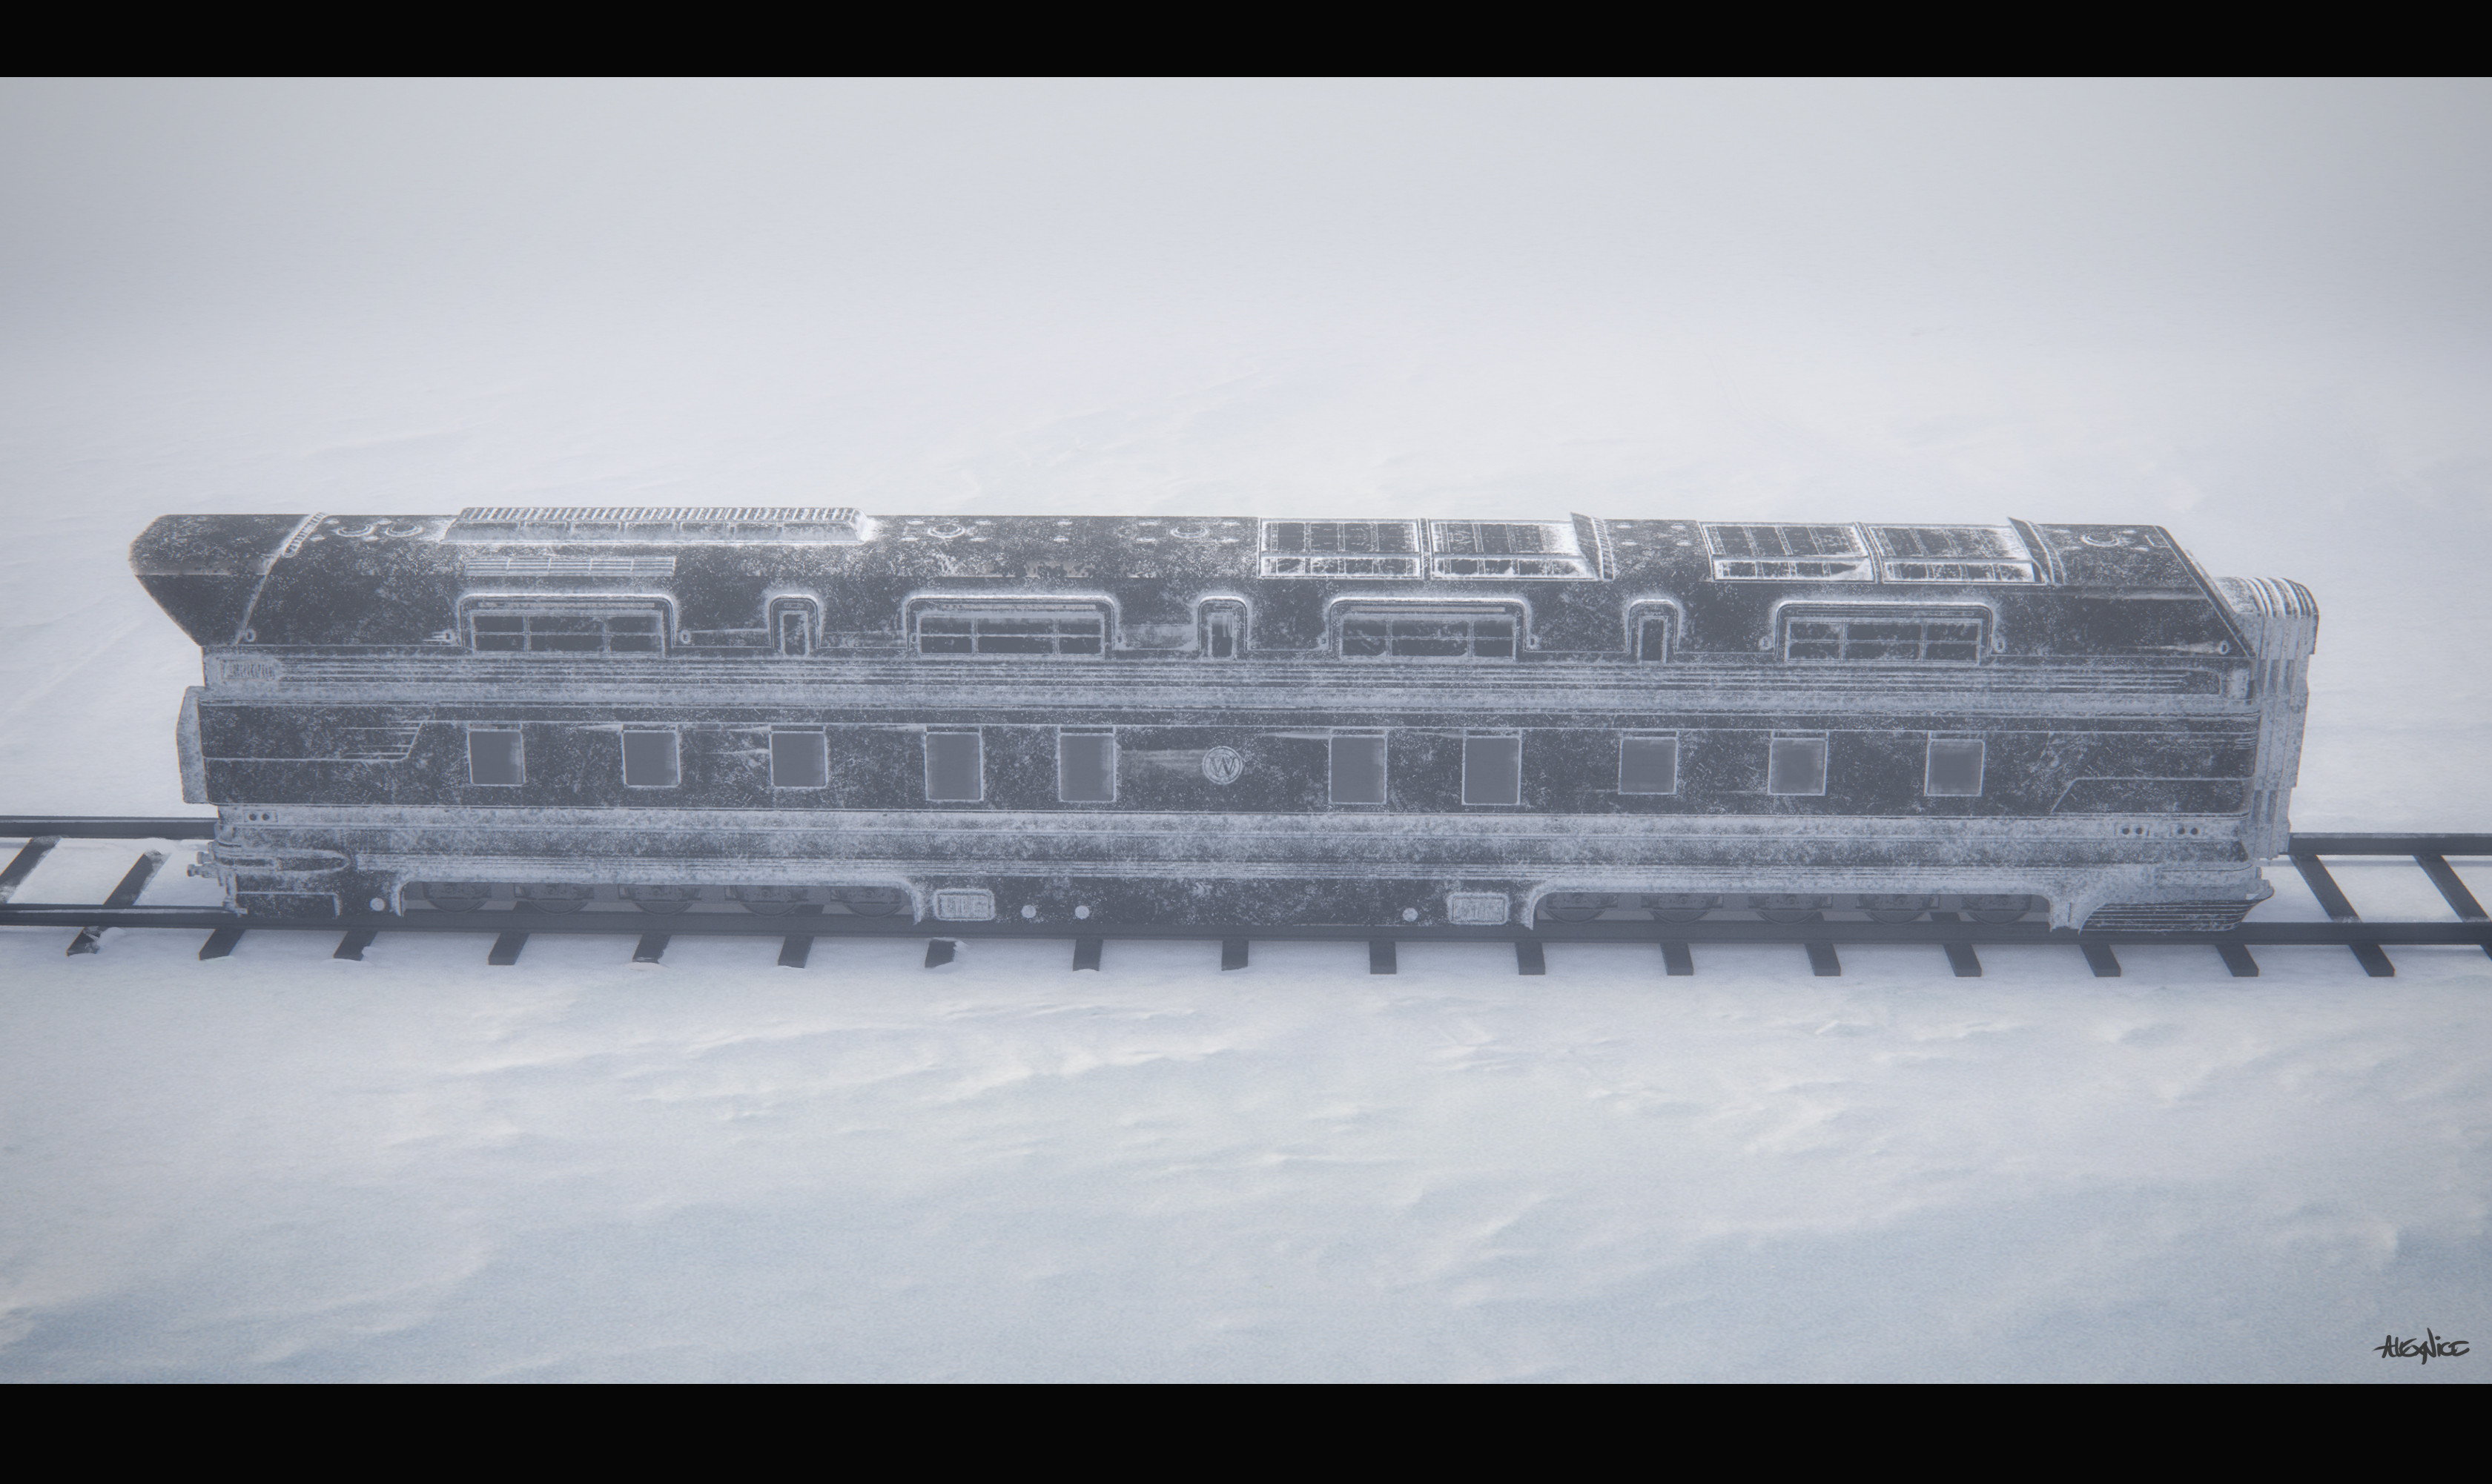 Alex Nice - Snowpiercer Series Train Design